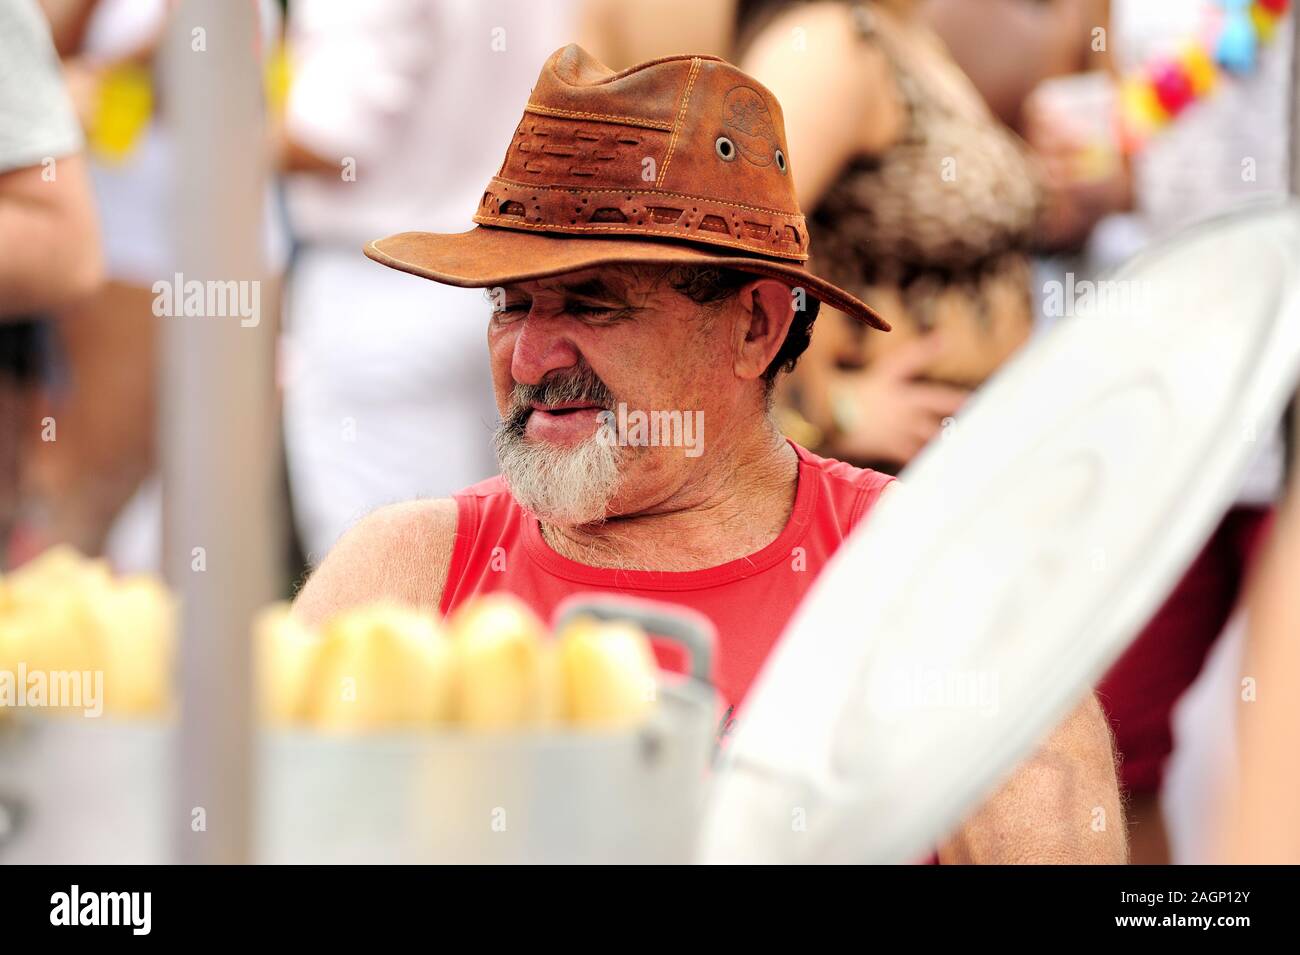 Südamerika, Brasilien - 3. März 2019: Mann verkauft gekochten Mais während eines Karnevals Straßenparade in der Innenstadt von Rio de Janeiro statt. Stockfoto